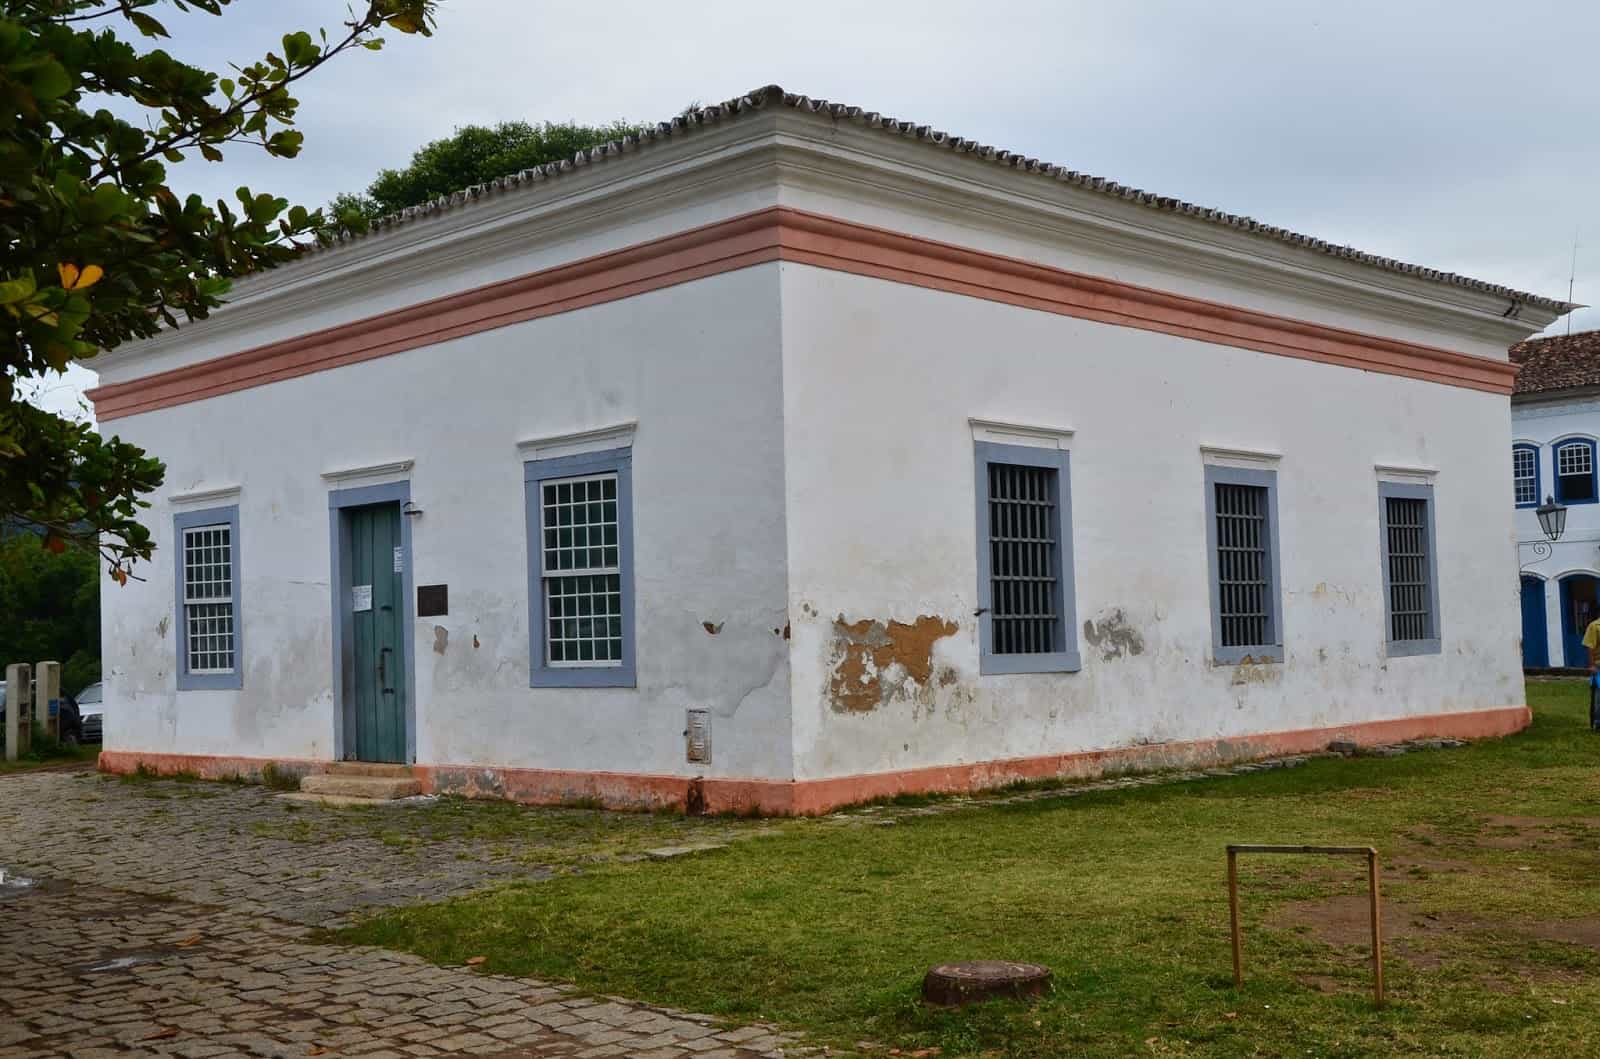 Casa de Cadeia in Paraty, Brazil